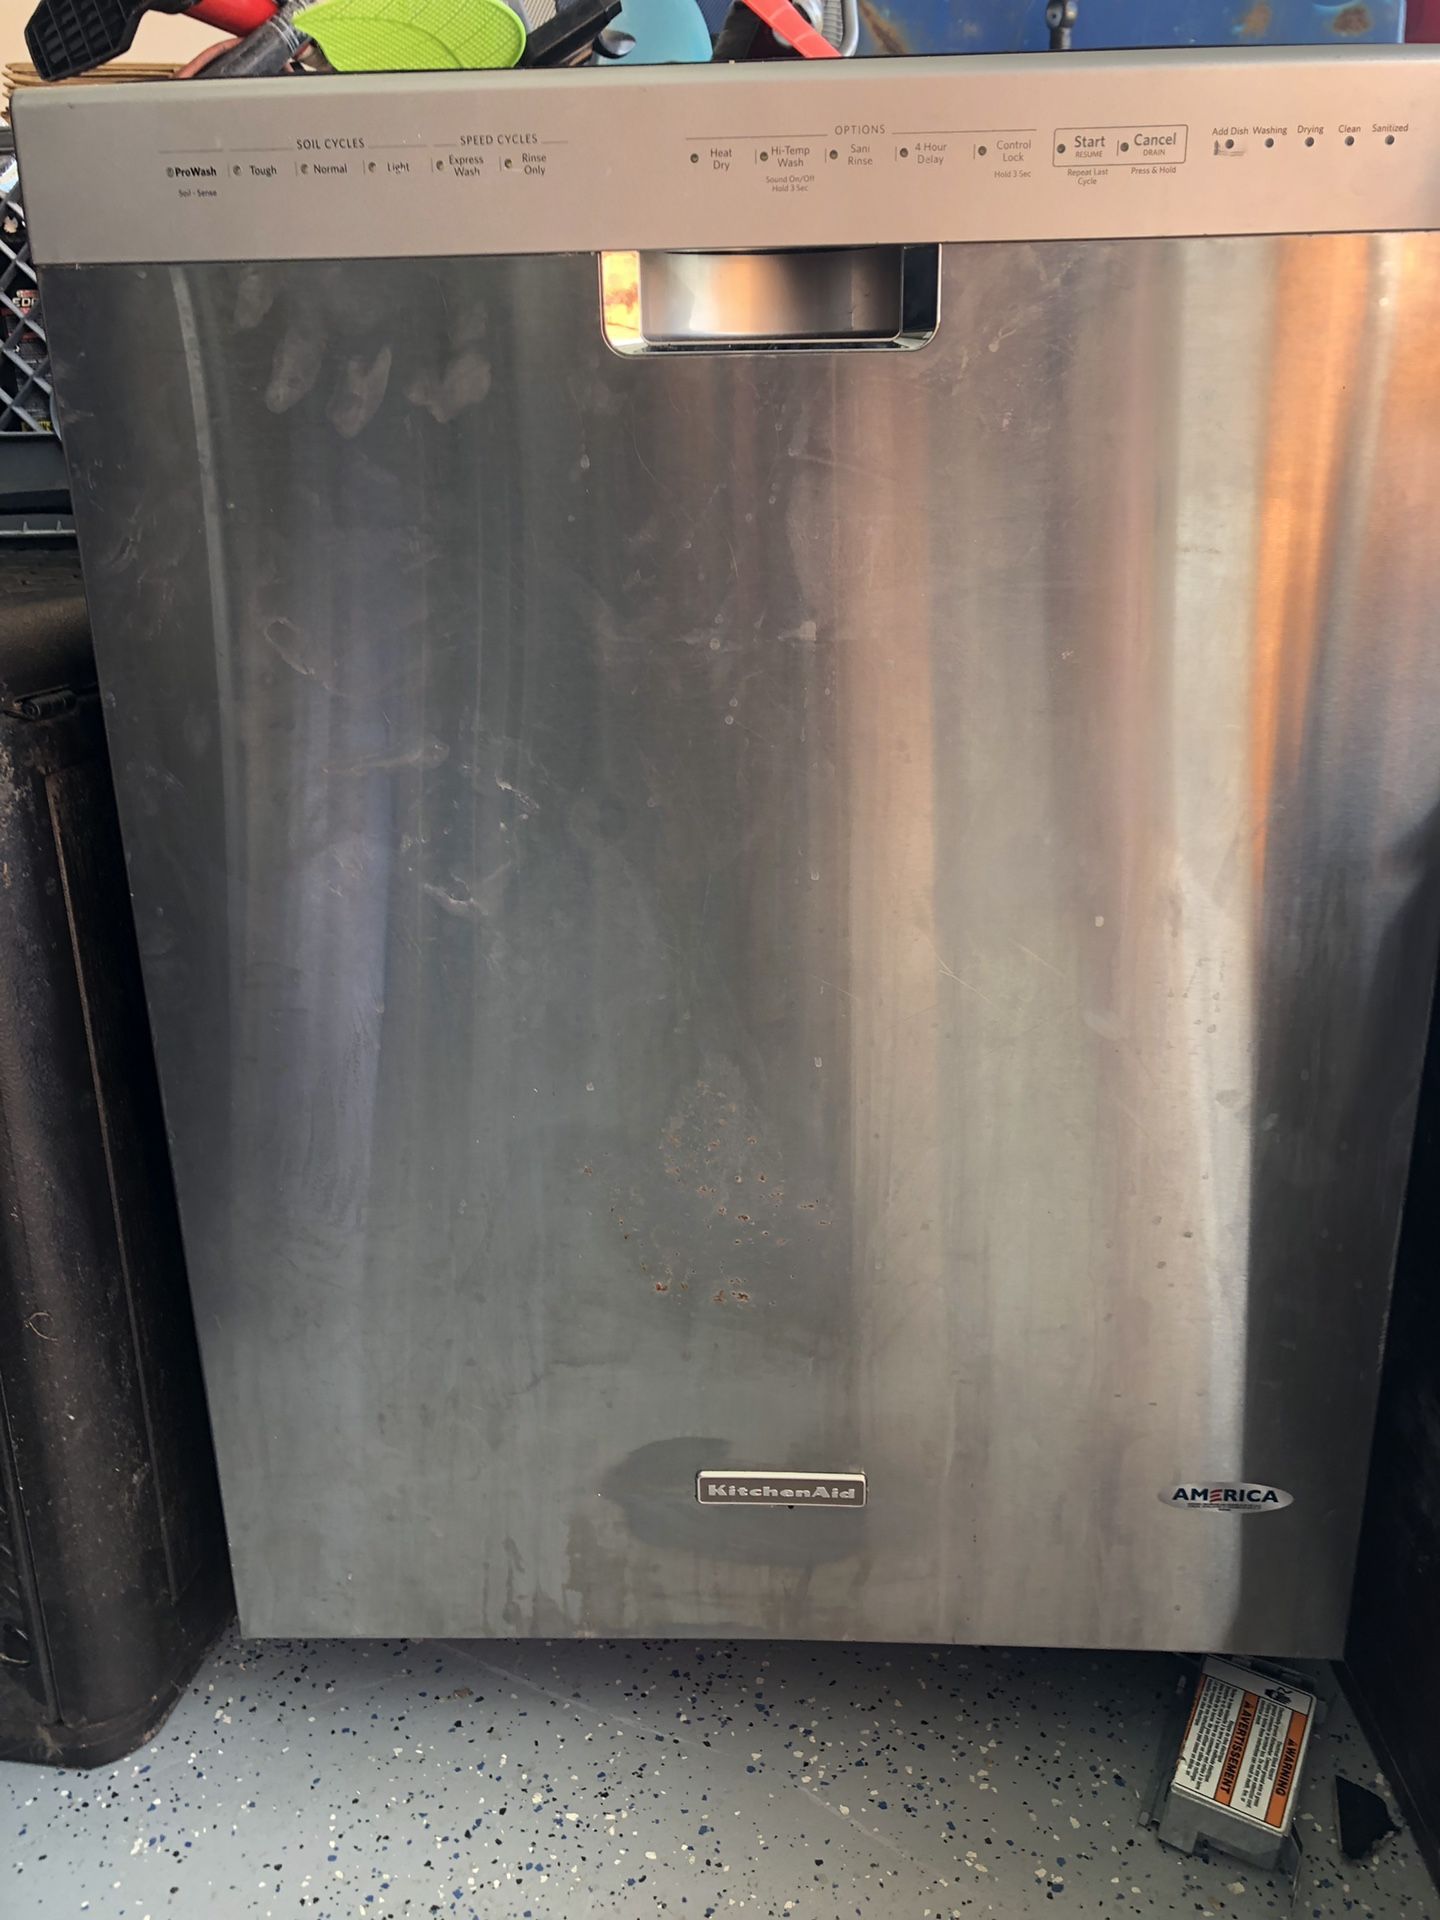 Stainless Steel Kitchen Aid Dishwasher